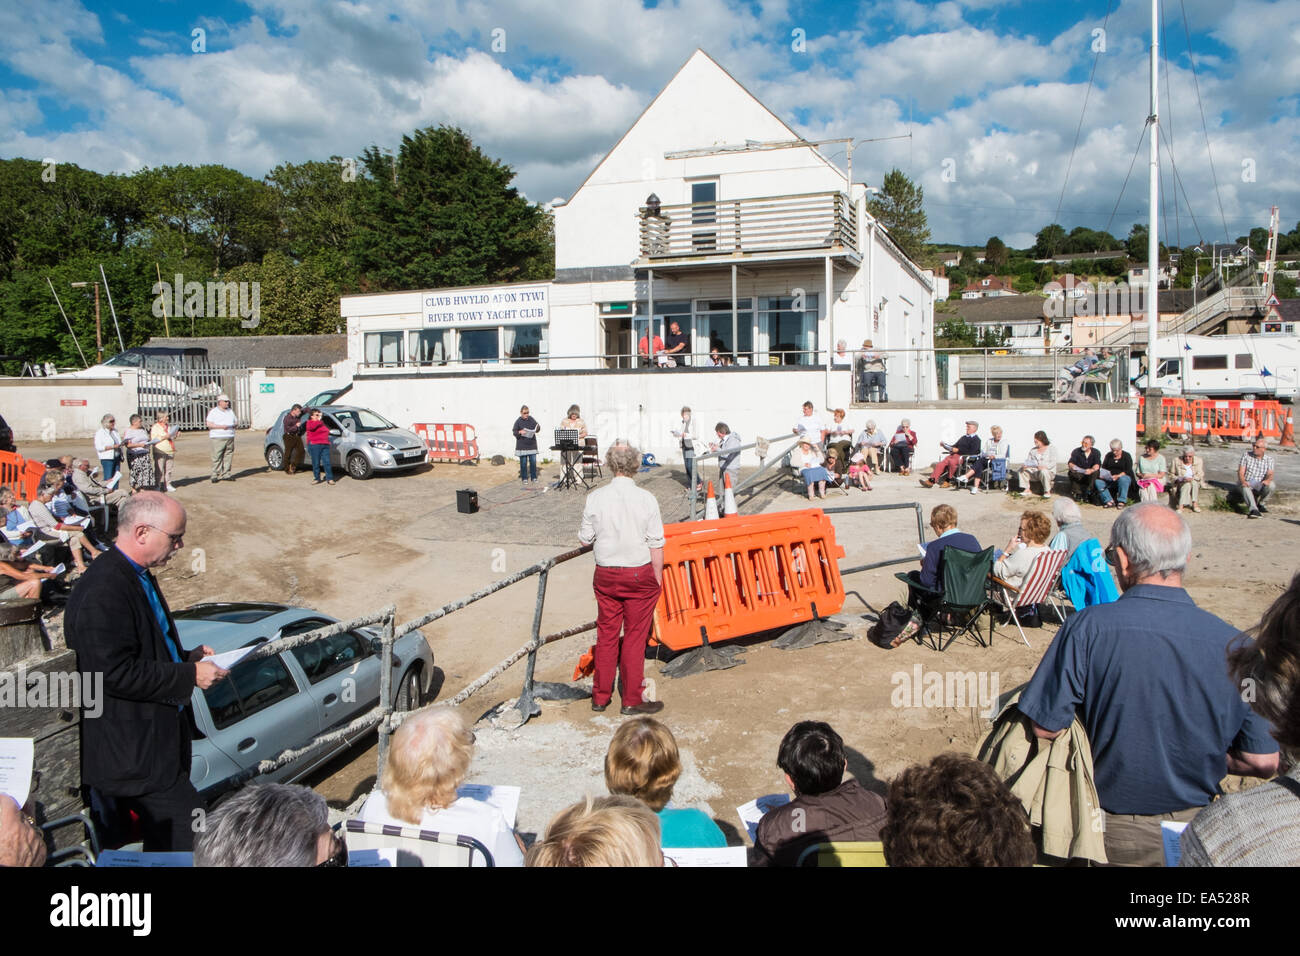 Inni sulla spiaggia. La chiesa cristiana di go-ers approfittare del clima soleggiato cantare canzoni religiose a Ferryside,West Wales, Galles Foto Stock